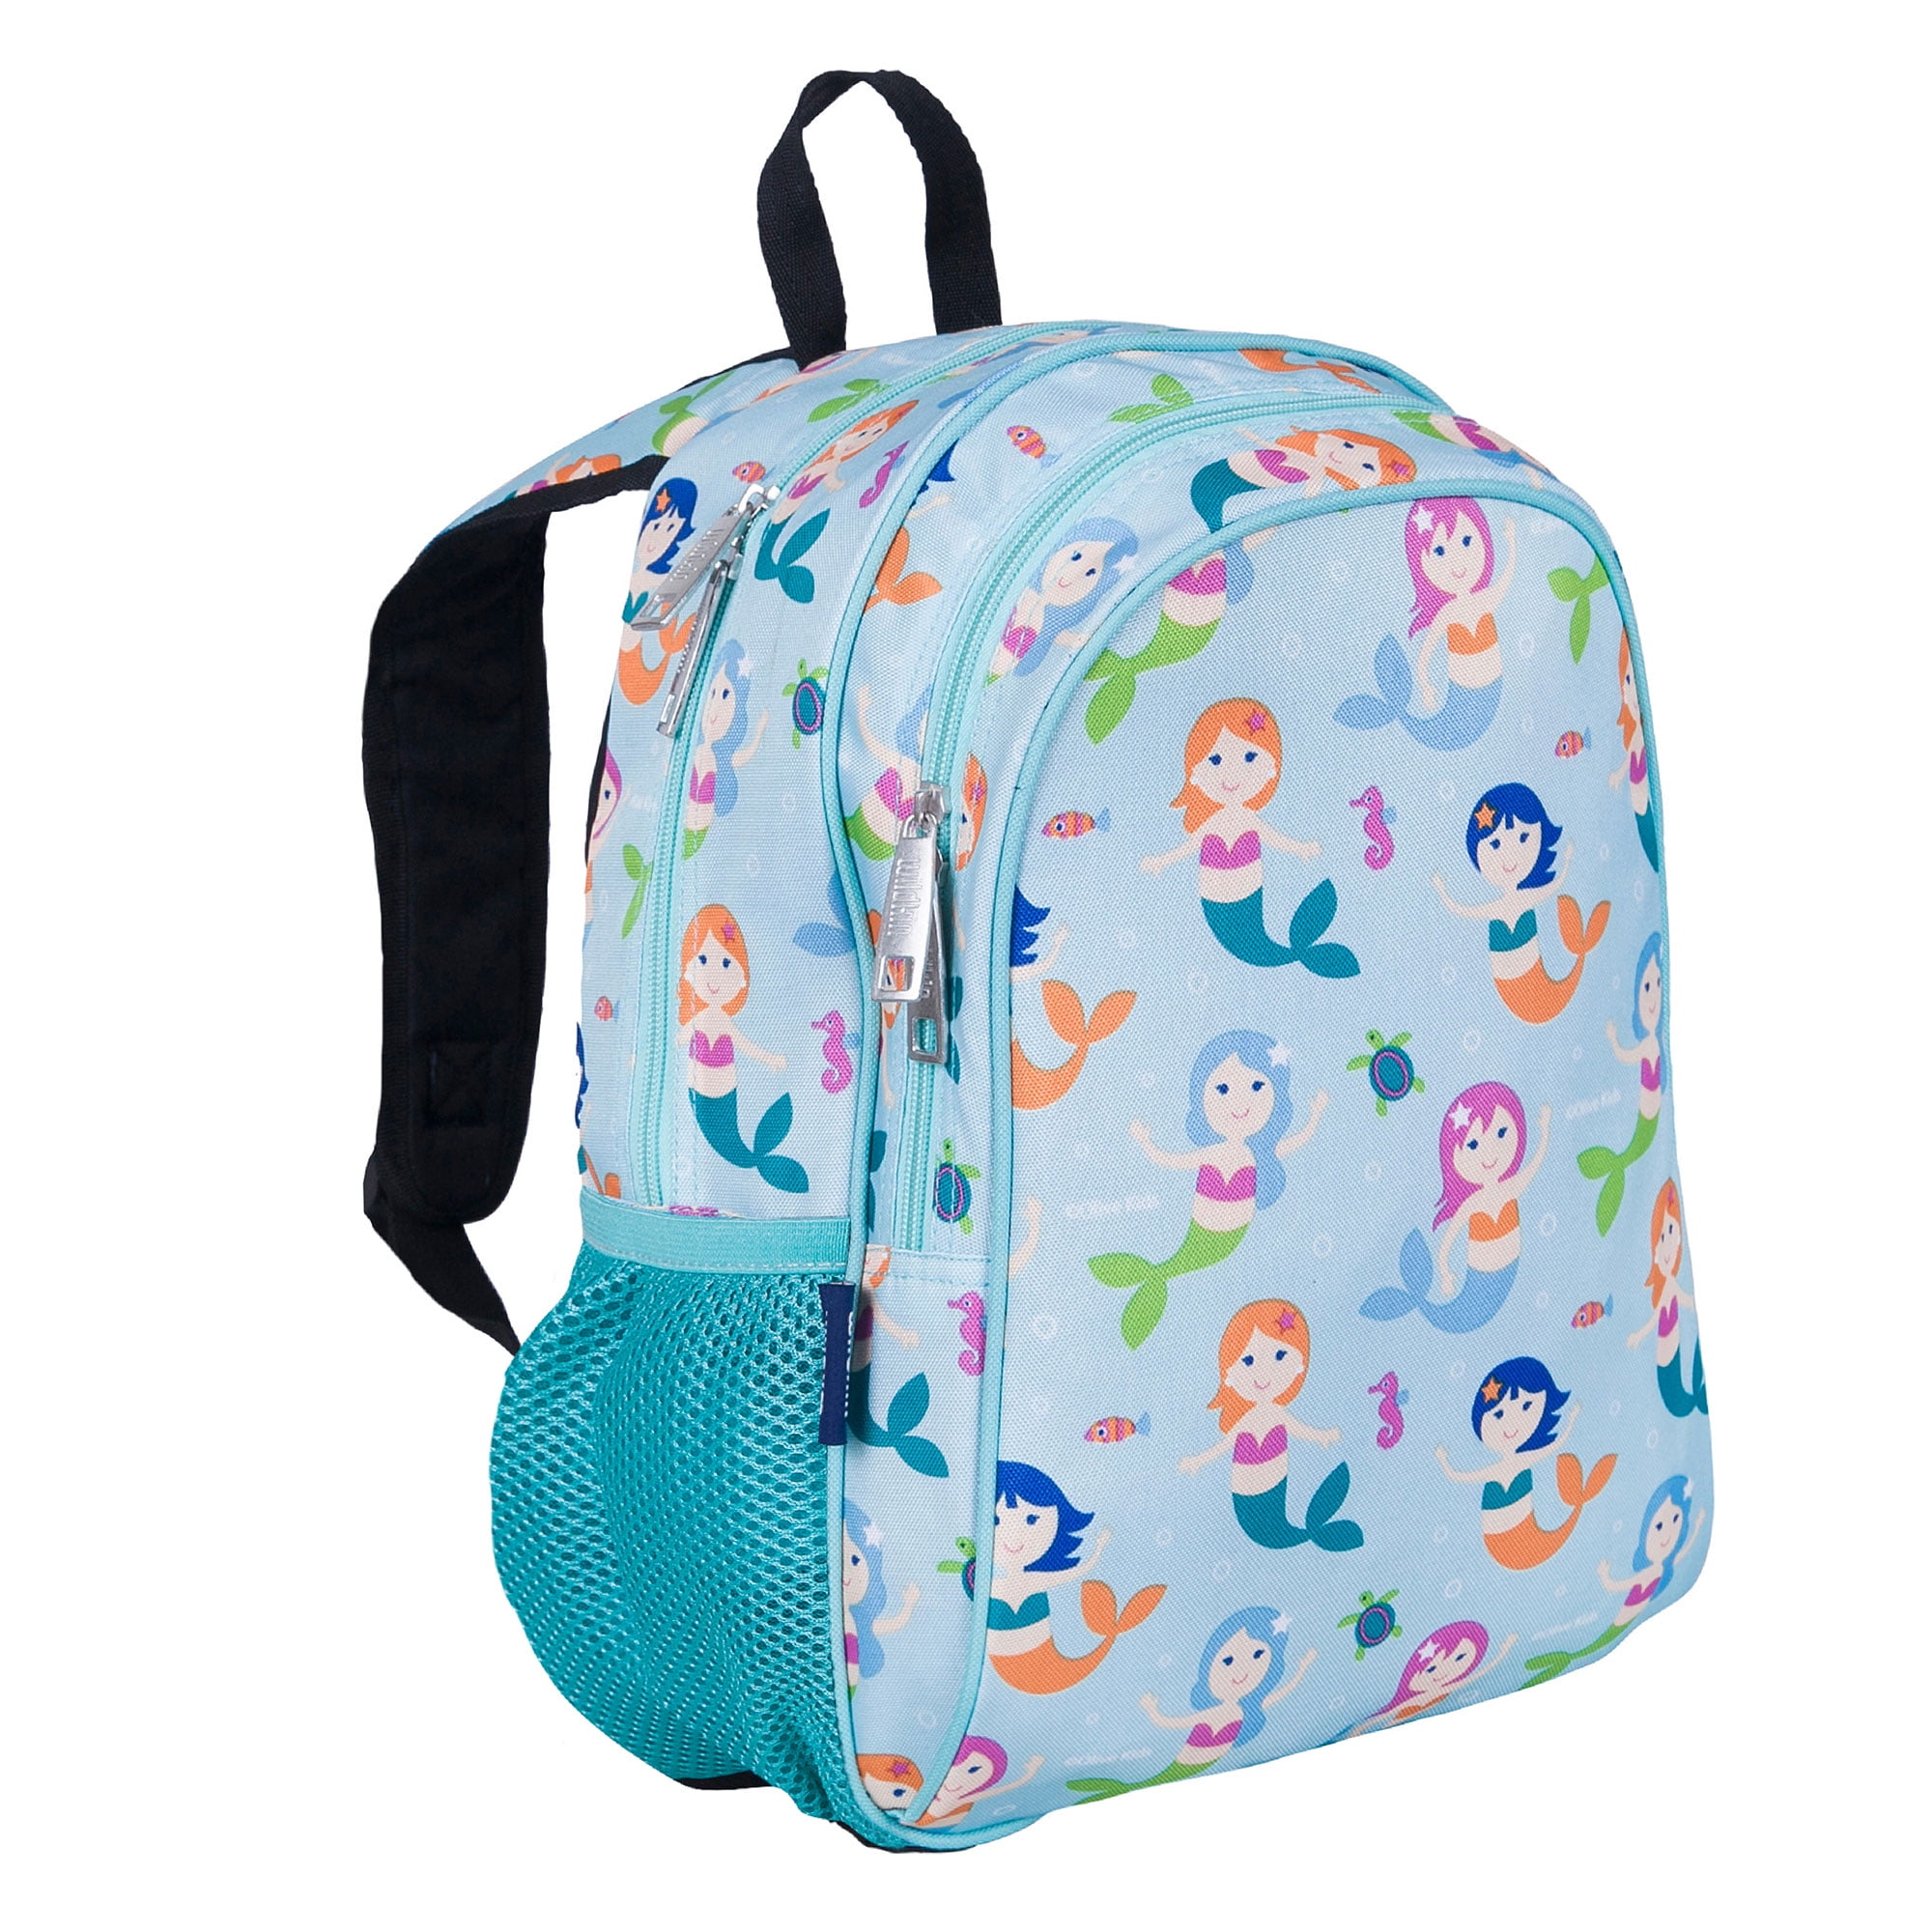 Childrens Rucksack Kids Bag Back Pack Back To School Mermaid Dinosaur Ballerina 